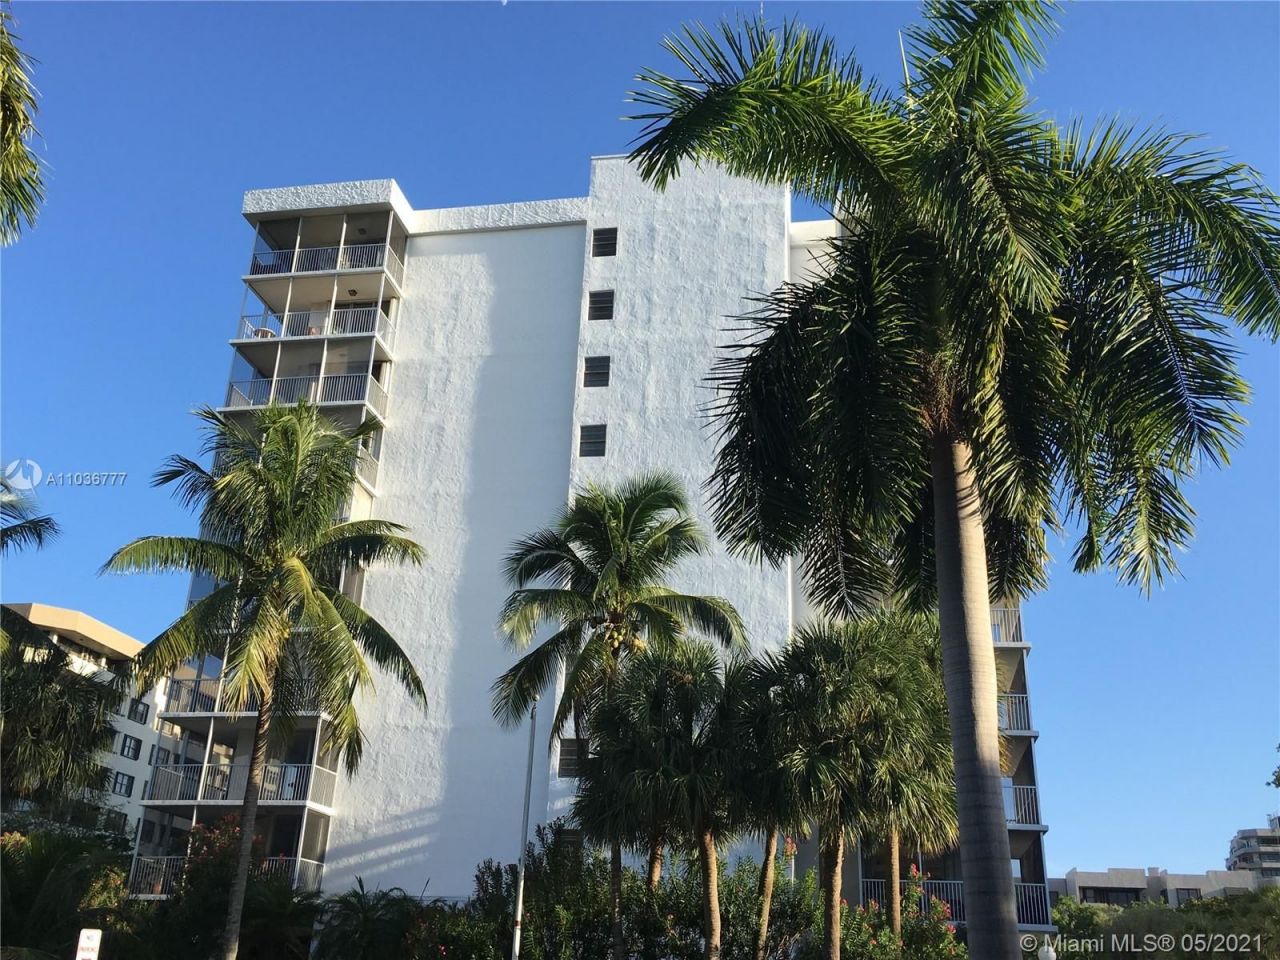 Apartment in Miami, USA, 124 sq.m - picture 1